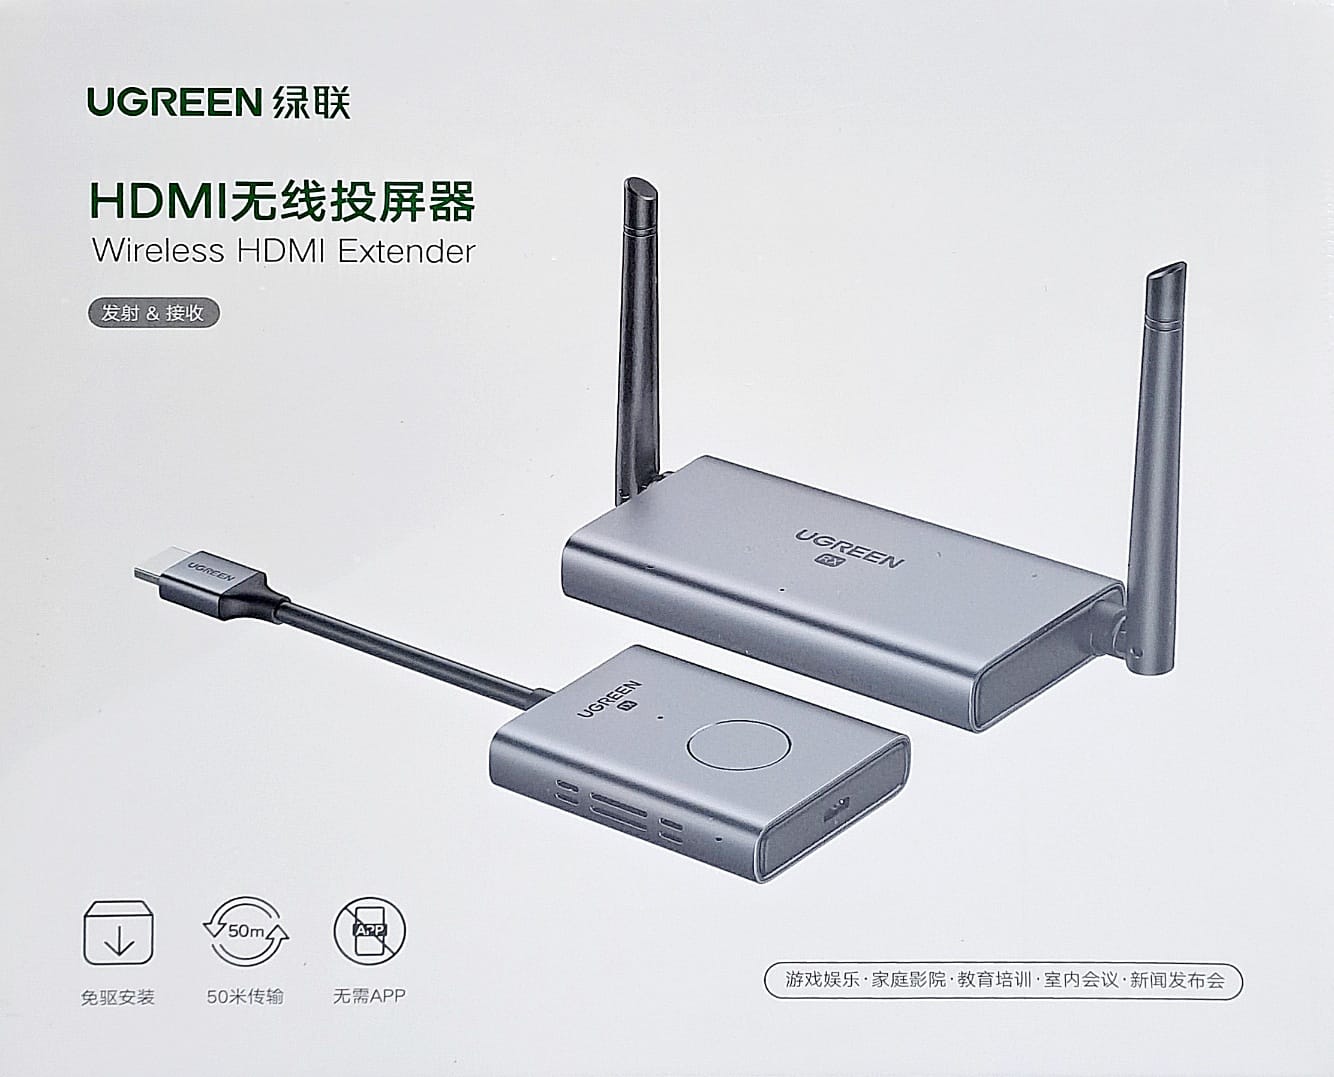 UGREEN 50633 Wireless HDMI Extender